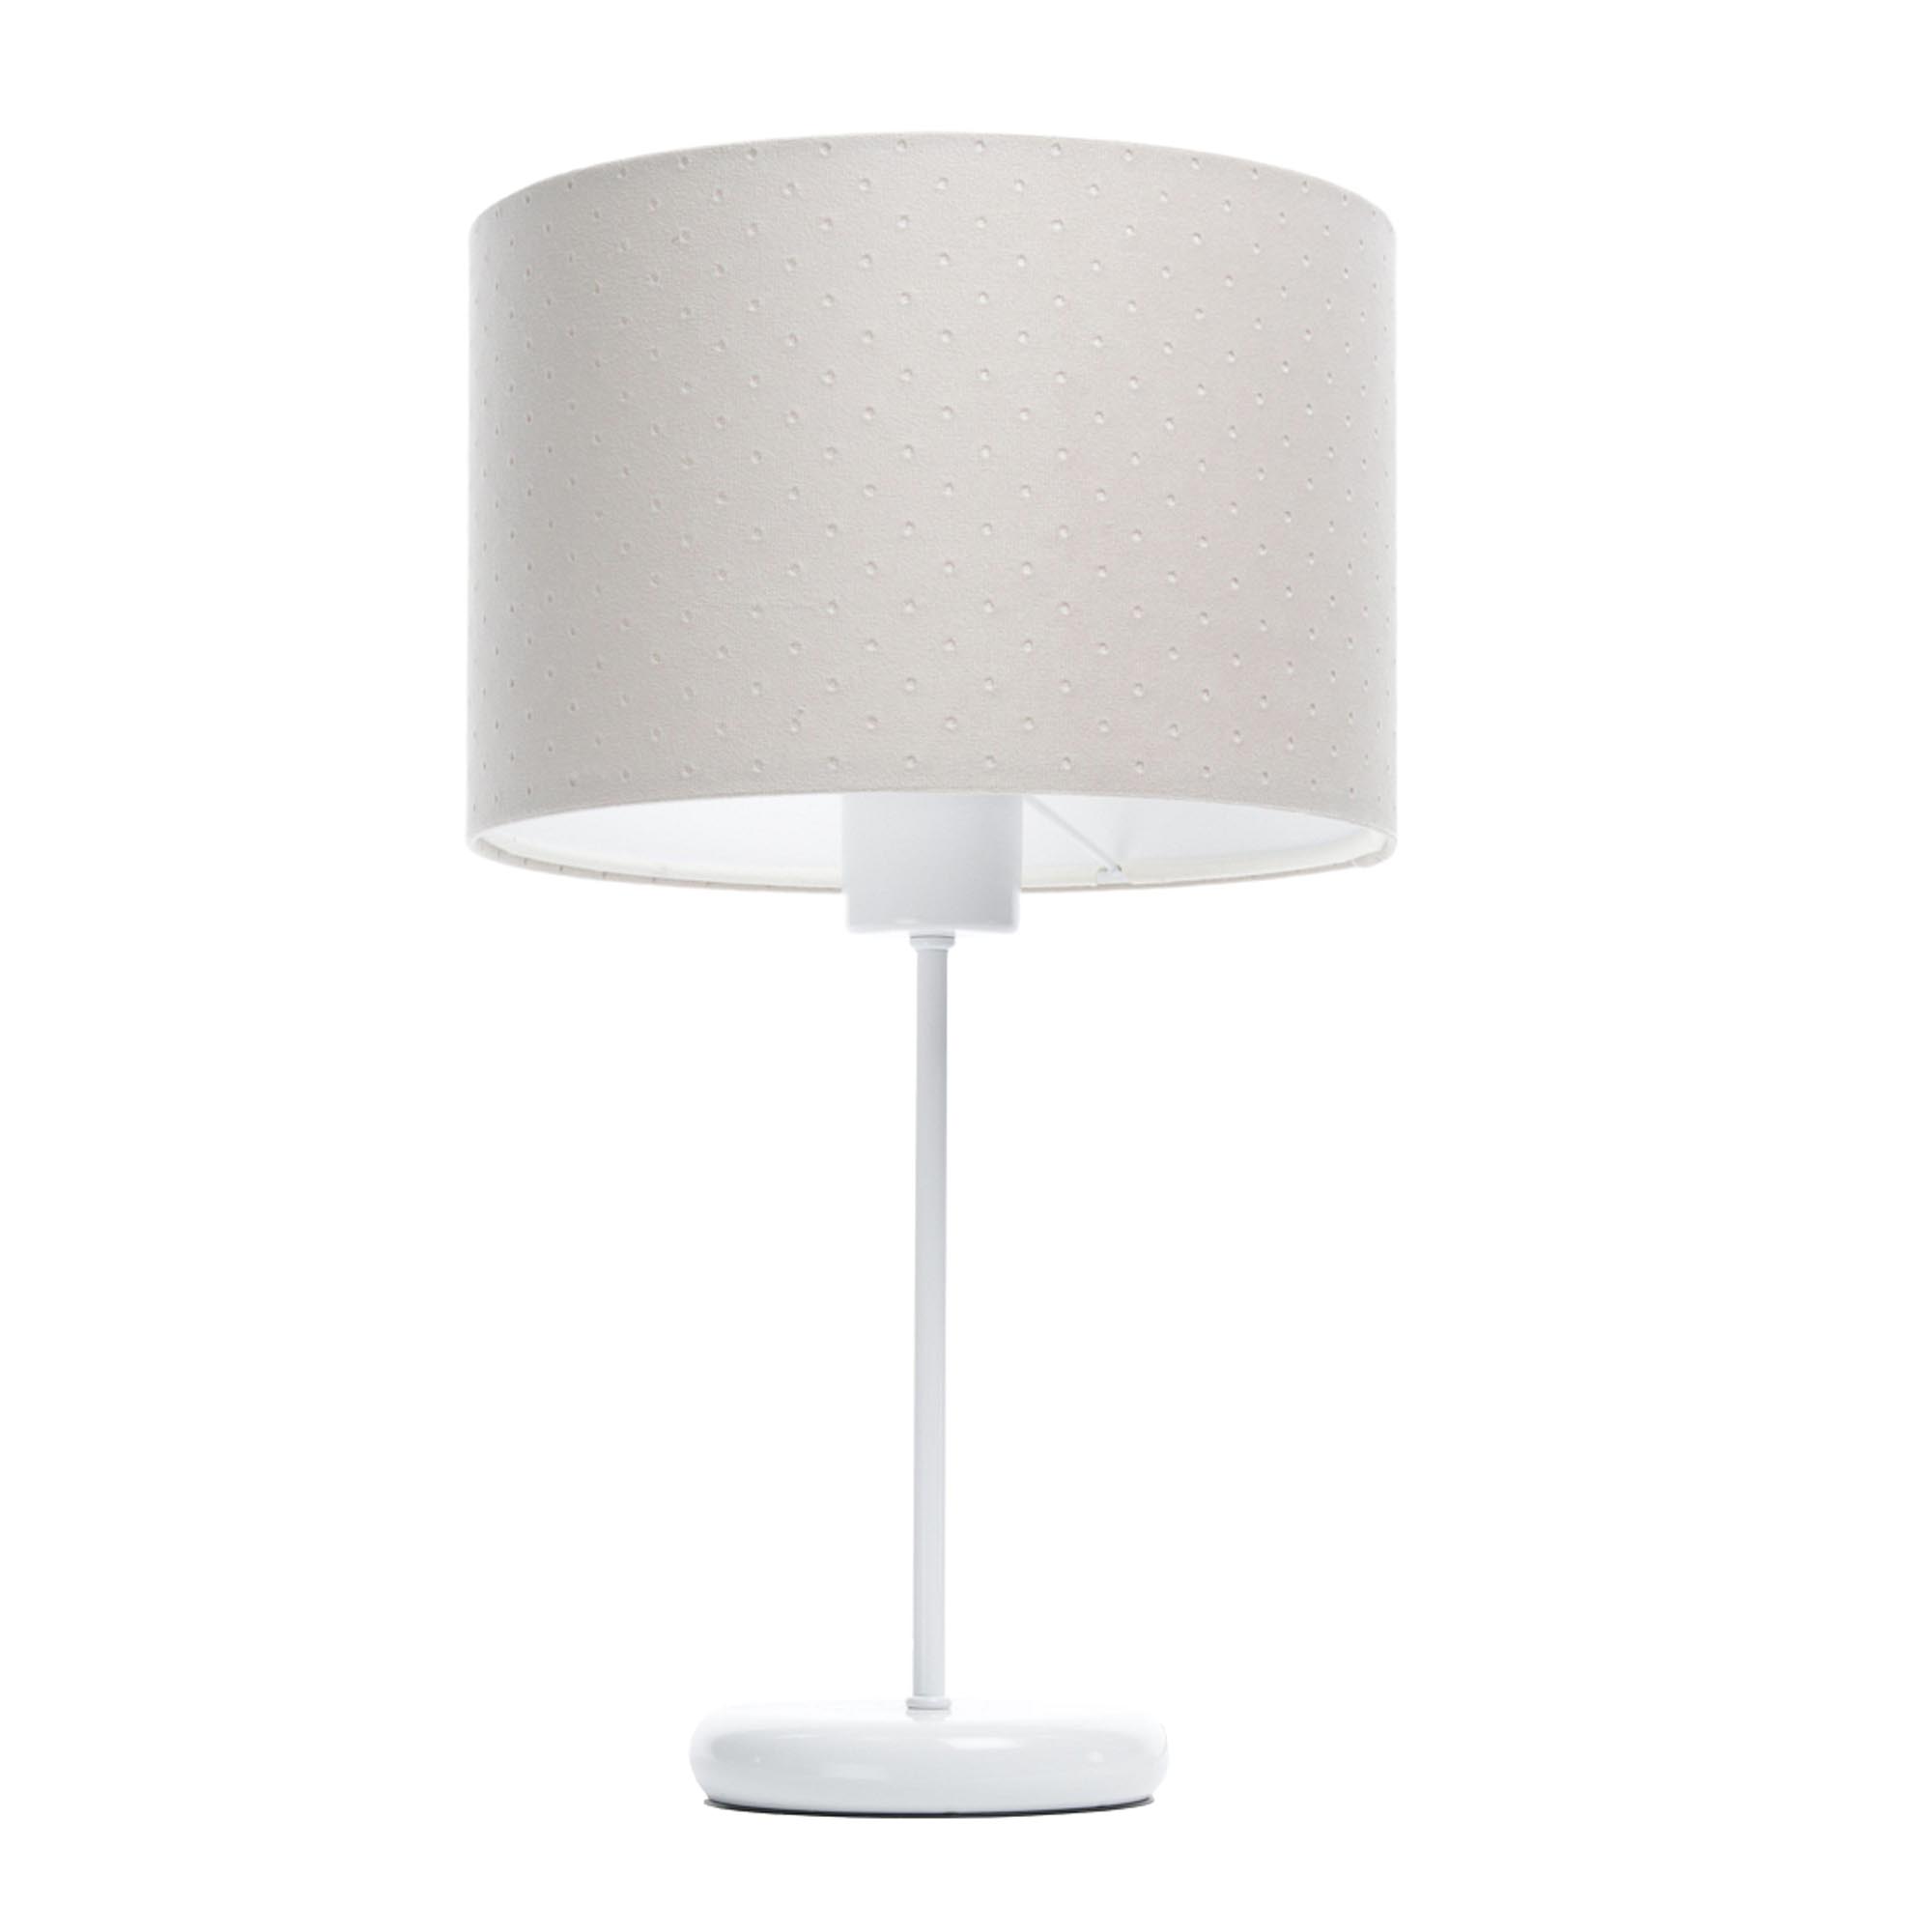 Jasnokremowa lampka stołowa glamour na białej metalowej podstawie